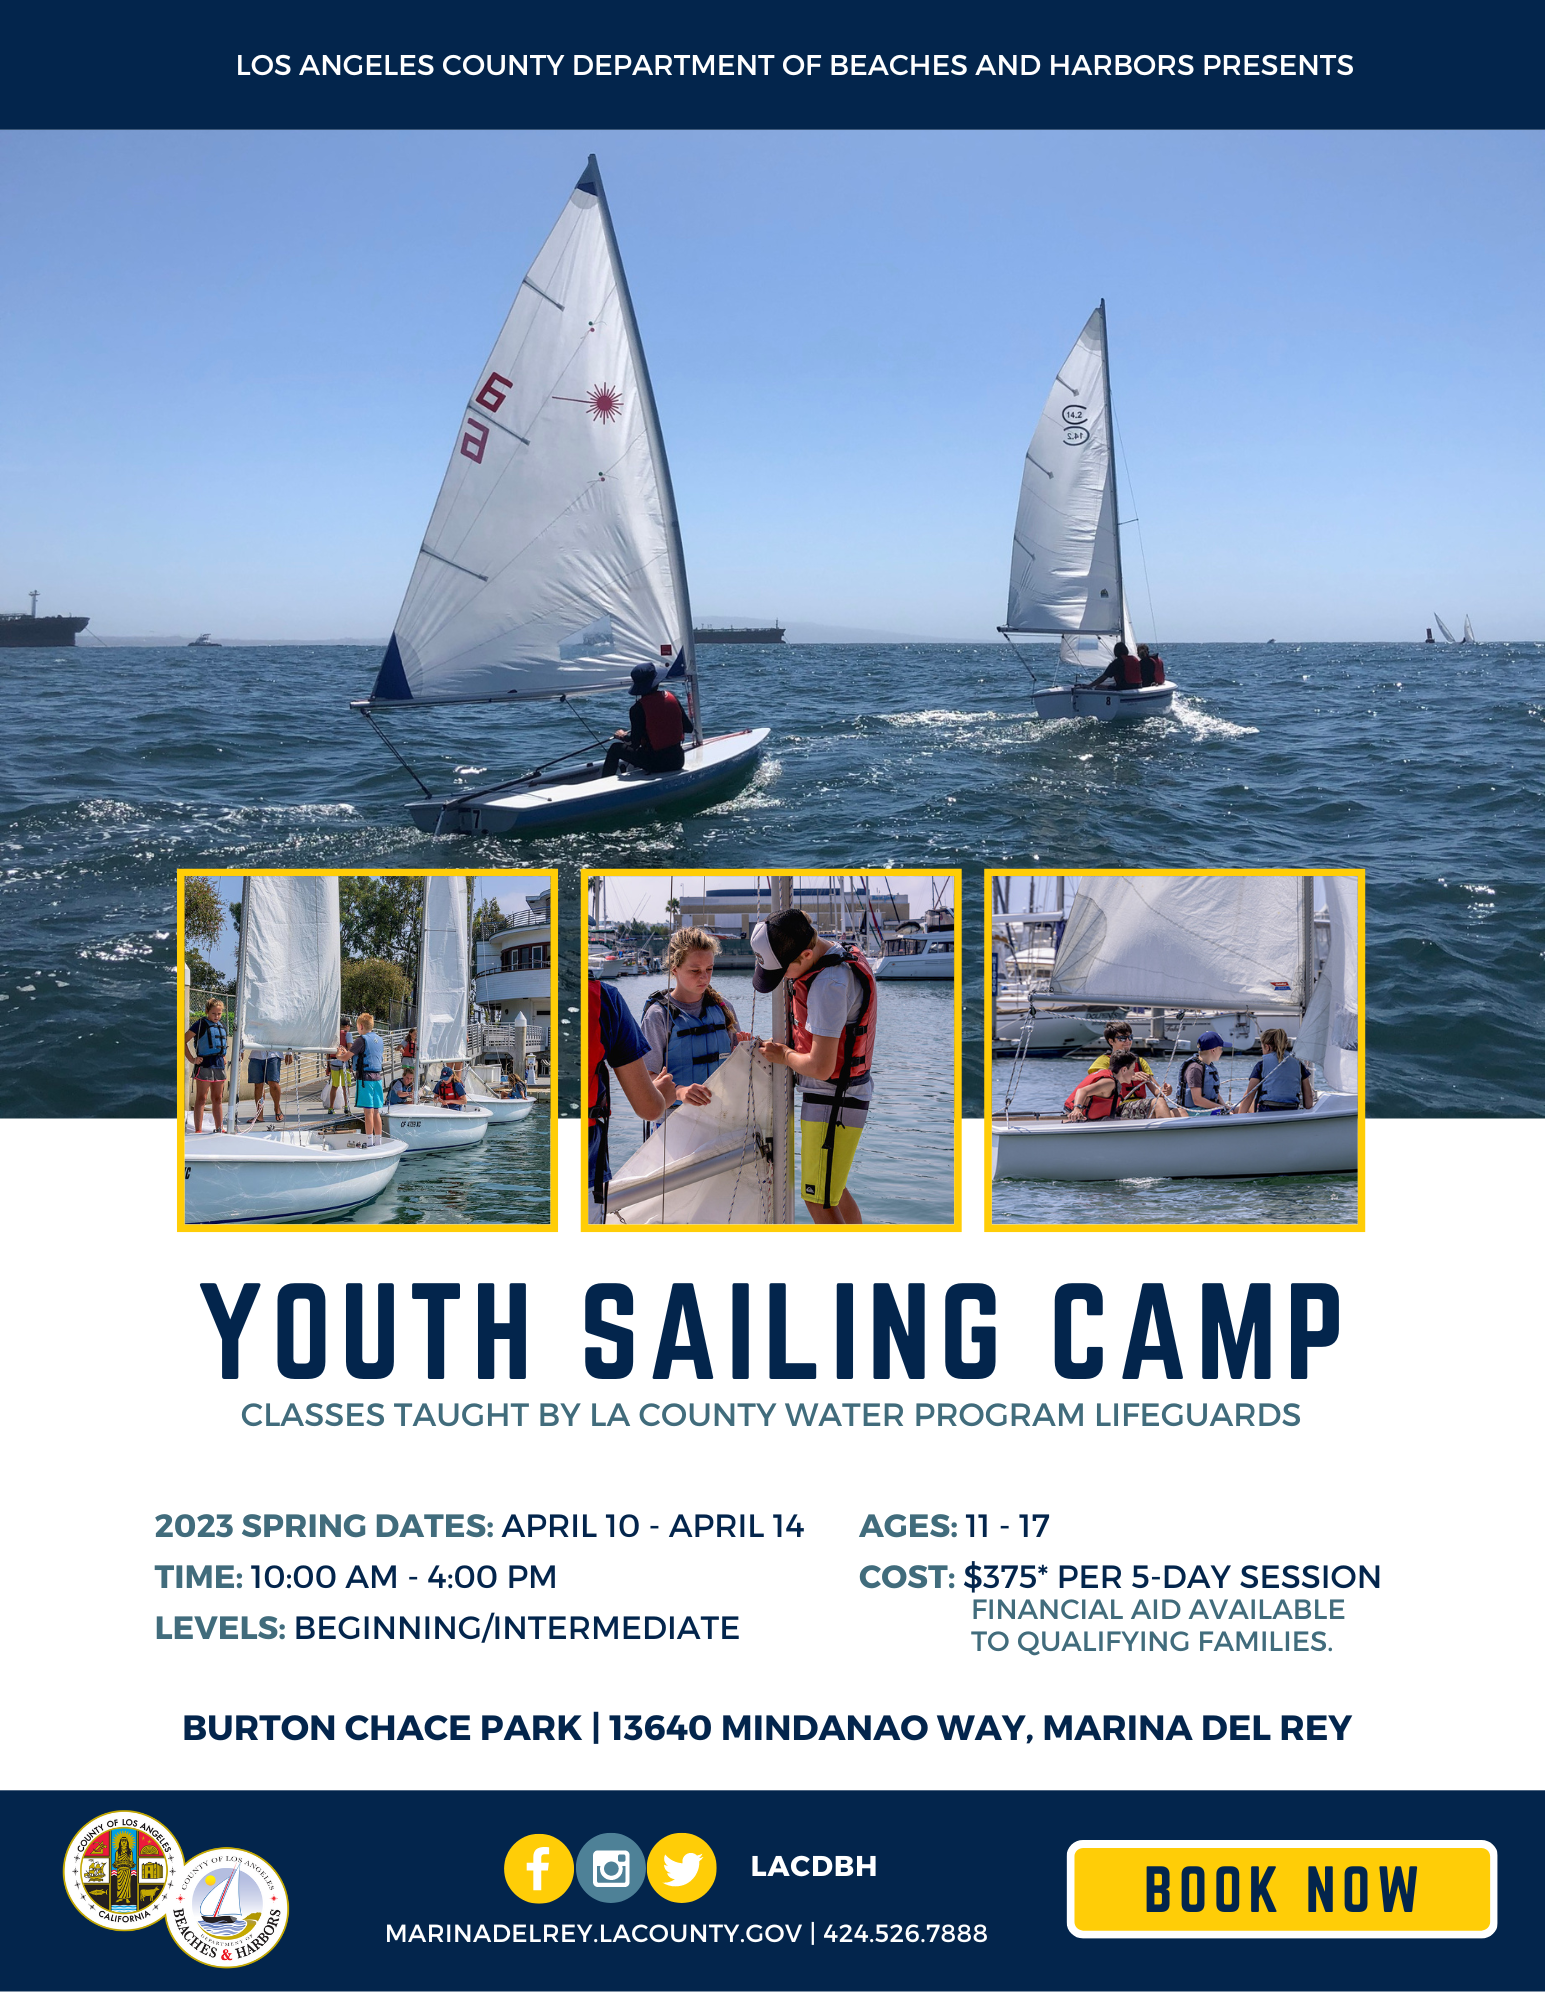 Youth Sailing Camp